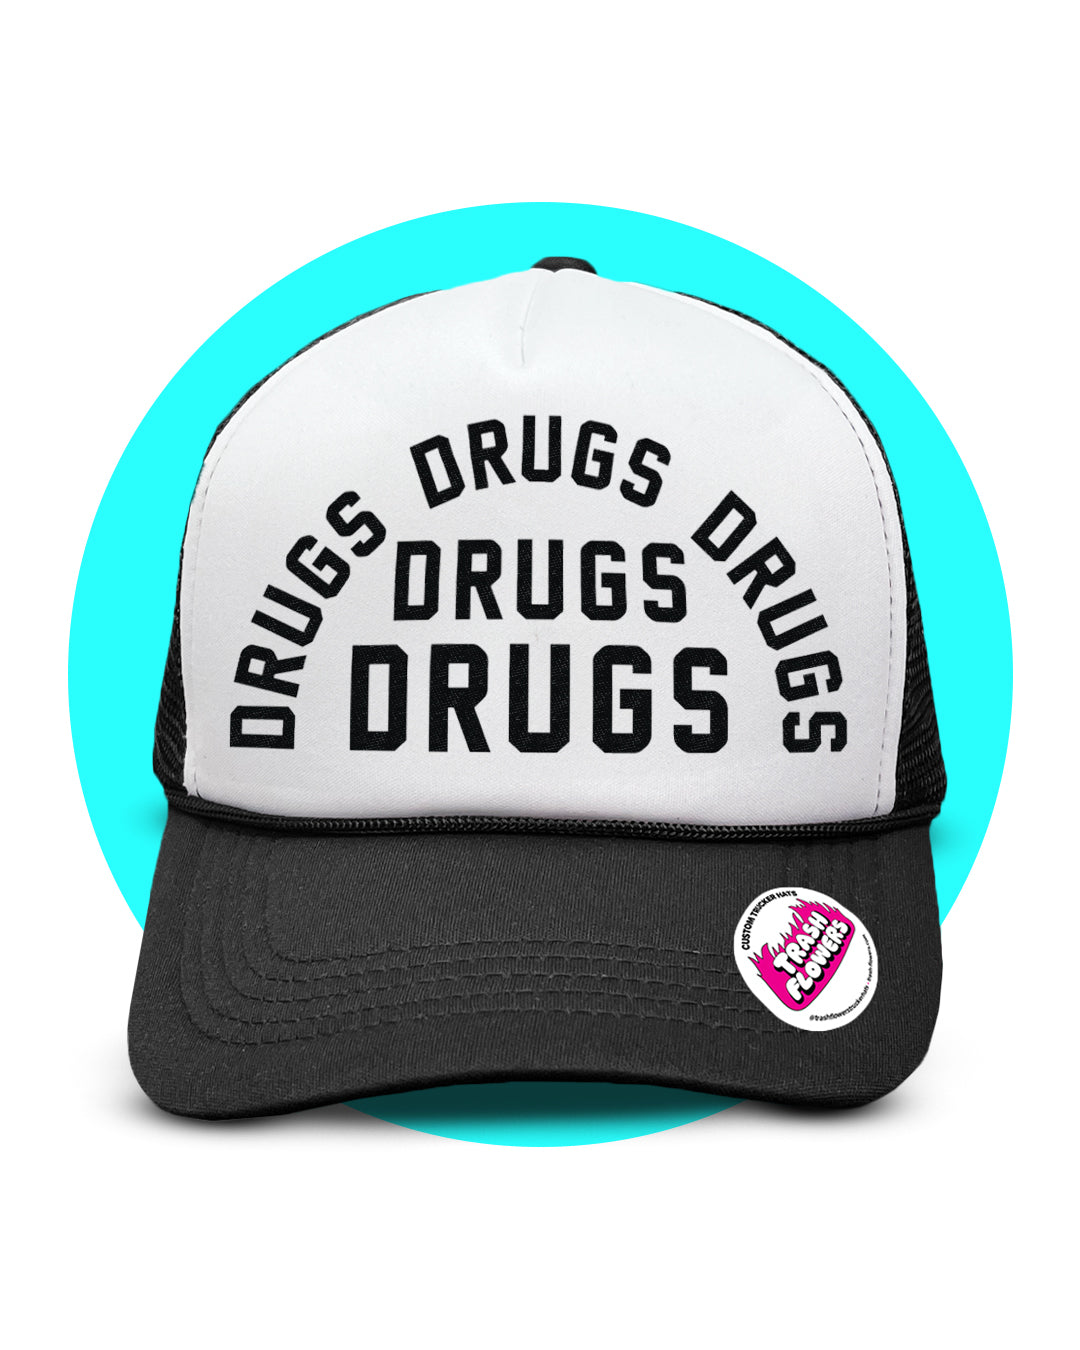 Drugs Drugs Drugs Trucker Hat